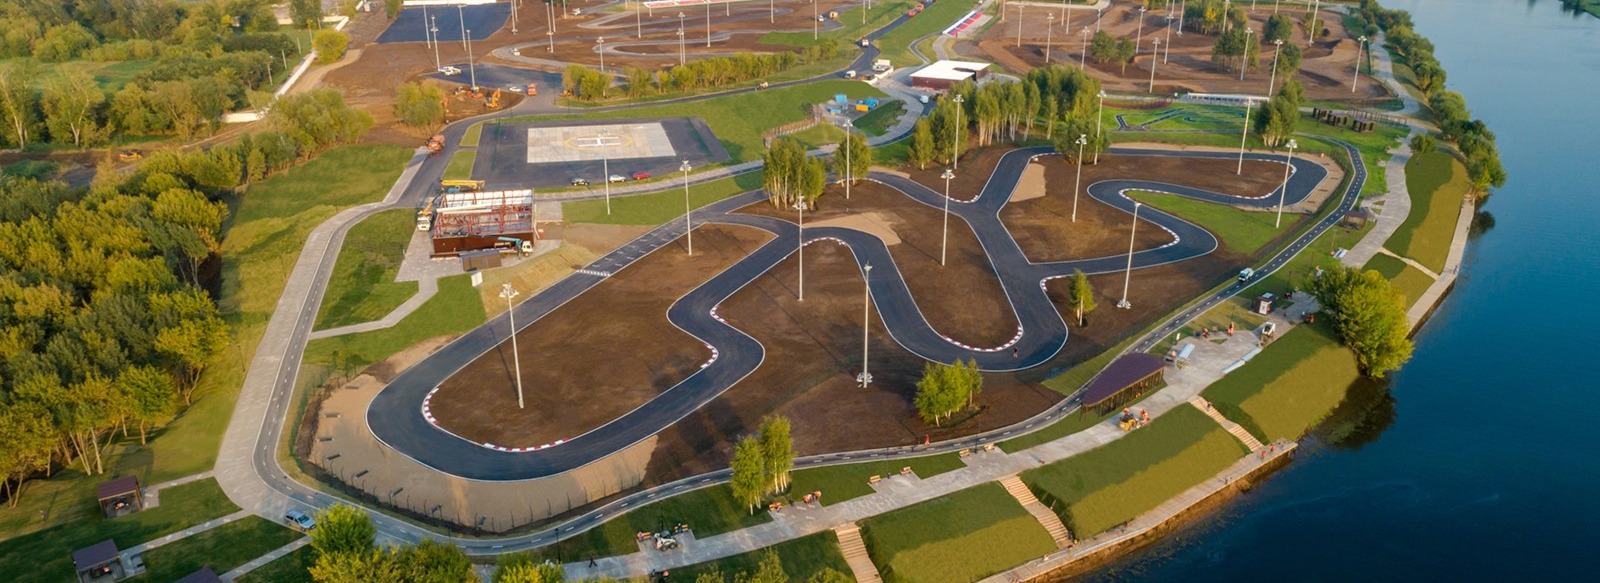 Парк технических видов спорта Курьяново